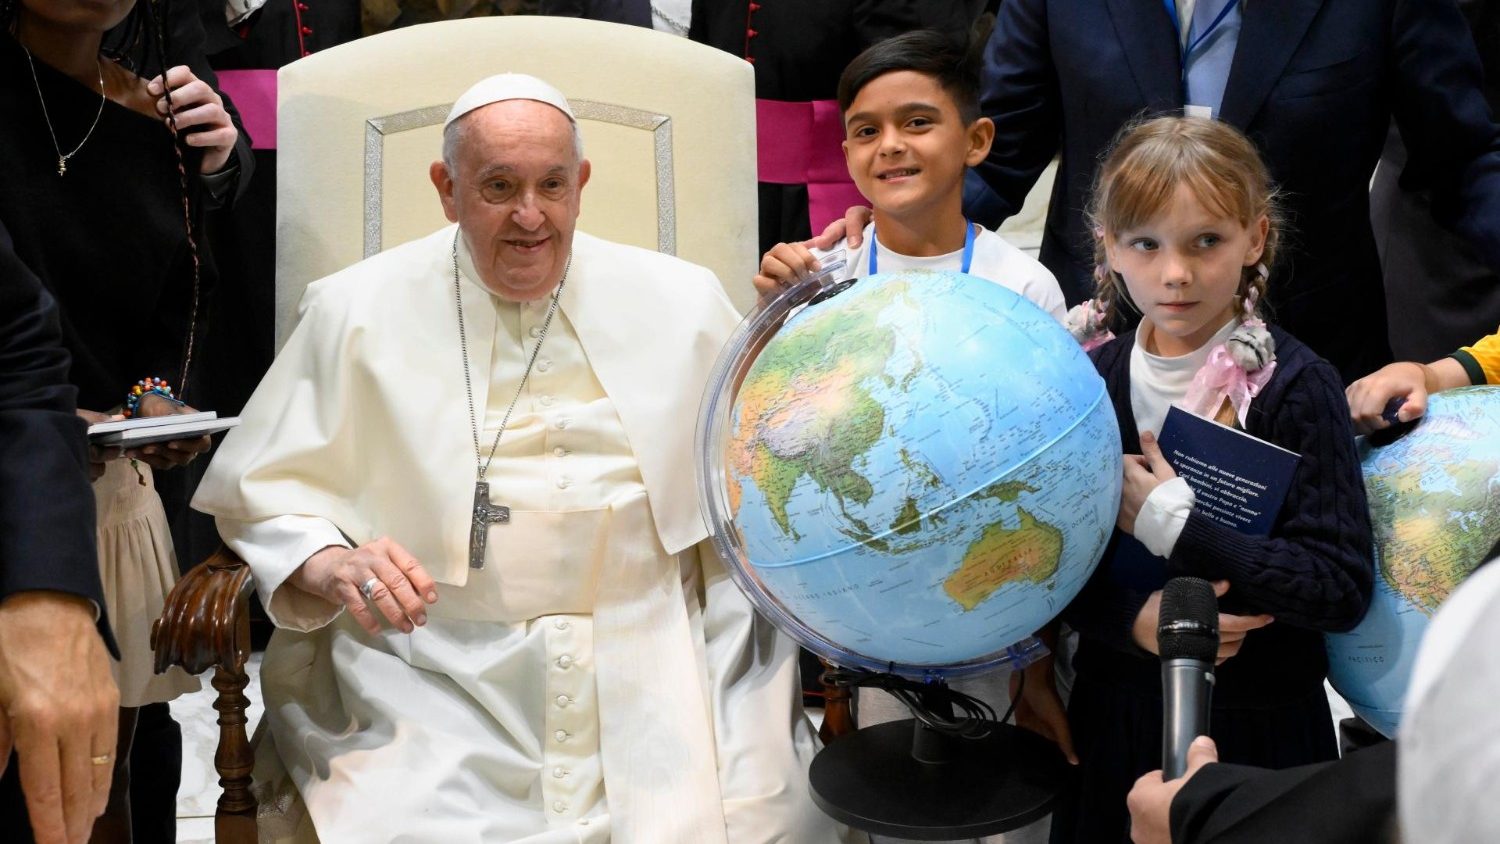 Gaudium Press - Agência Católica de Notícias - Igreja no Brasil e no mundo  - Papa se reúne com crianças da colônia de férias do Vaticano O Papa  Francisco recebeu, na manhã